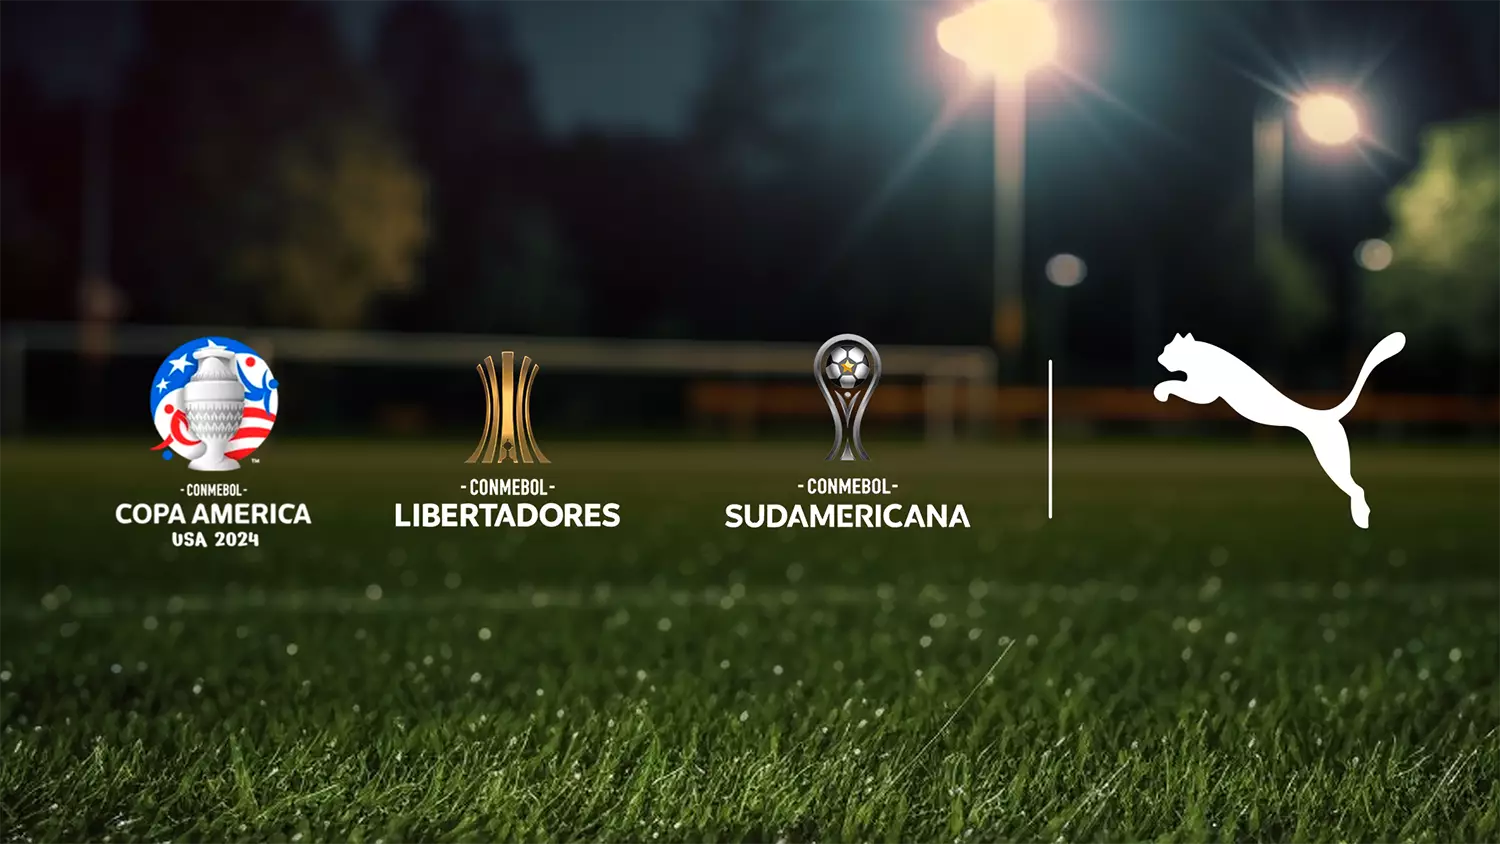 PUMA s'associe à la CONMEBOL pour dynamiser le football latino-américain